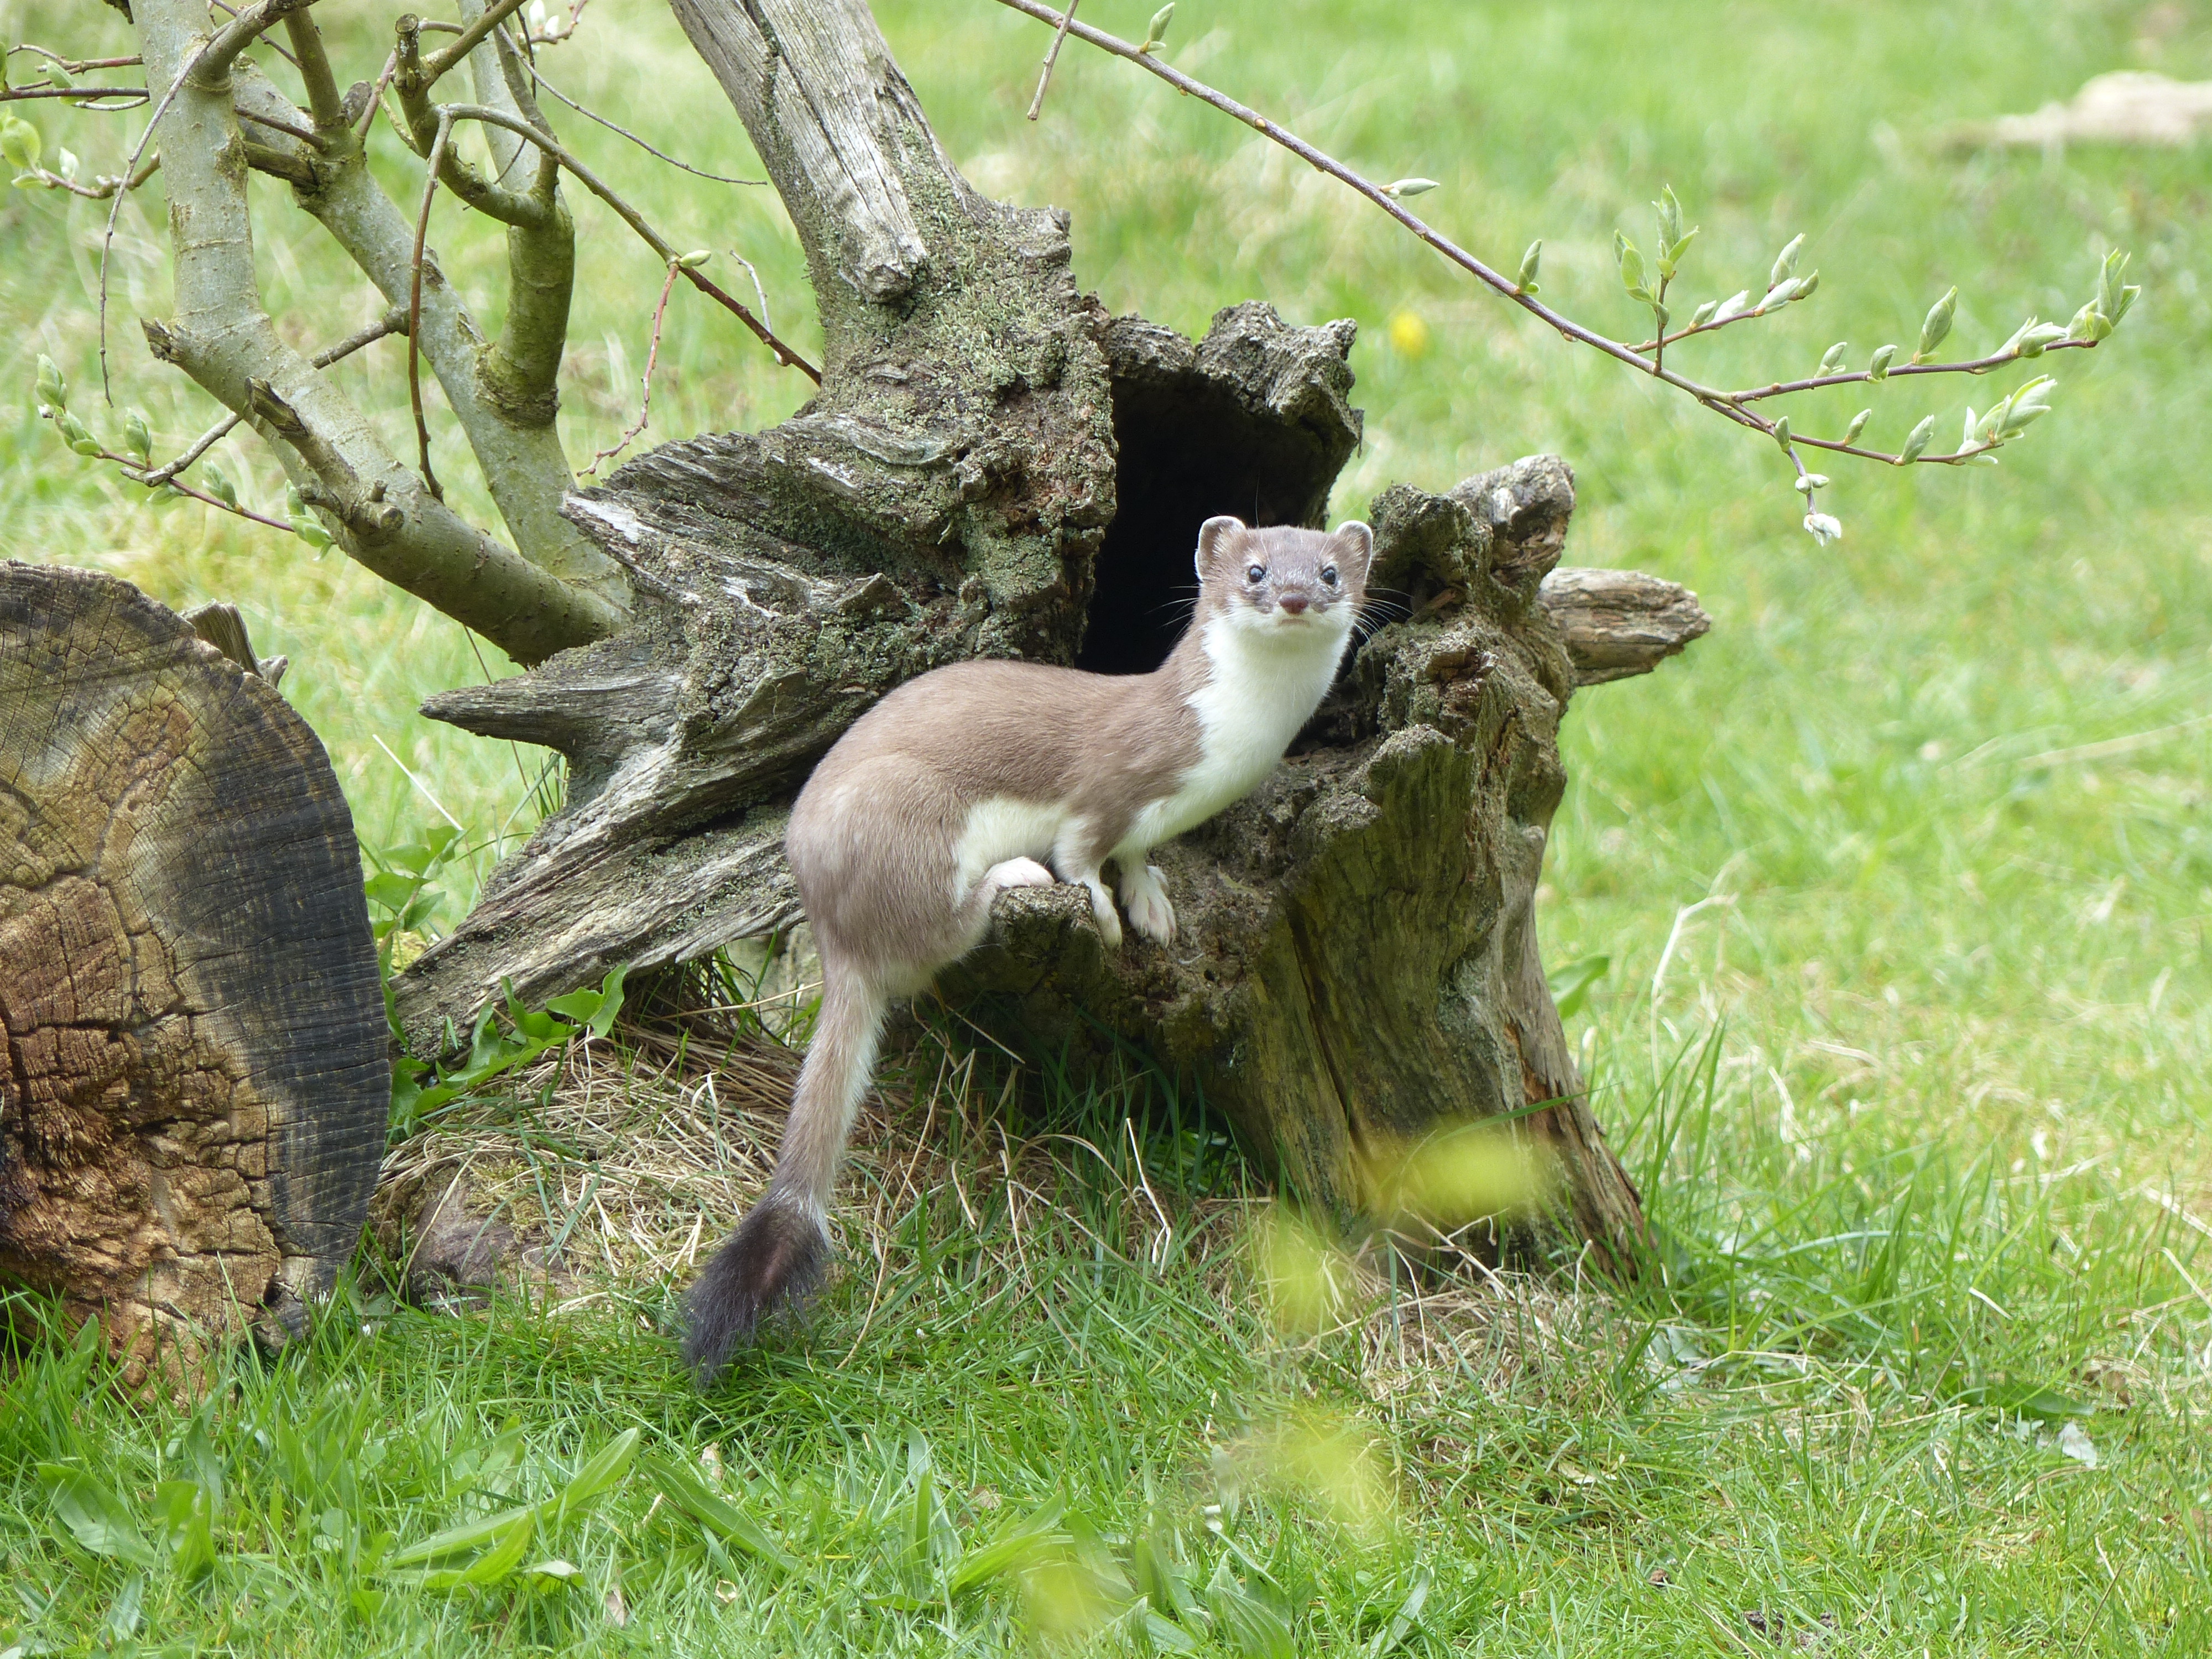 Een hermelijn zit in een omgehakte boom in het gras